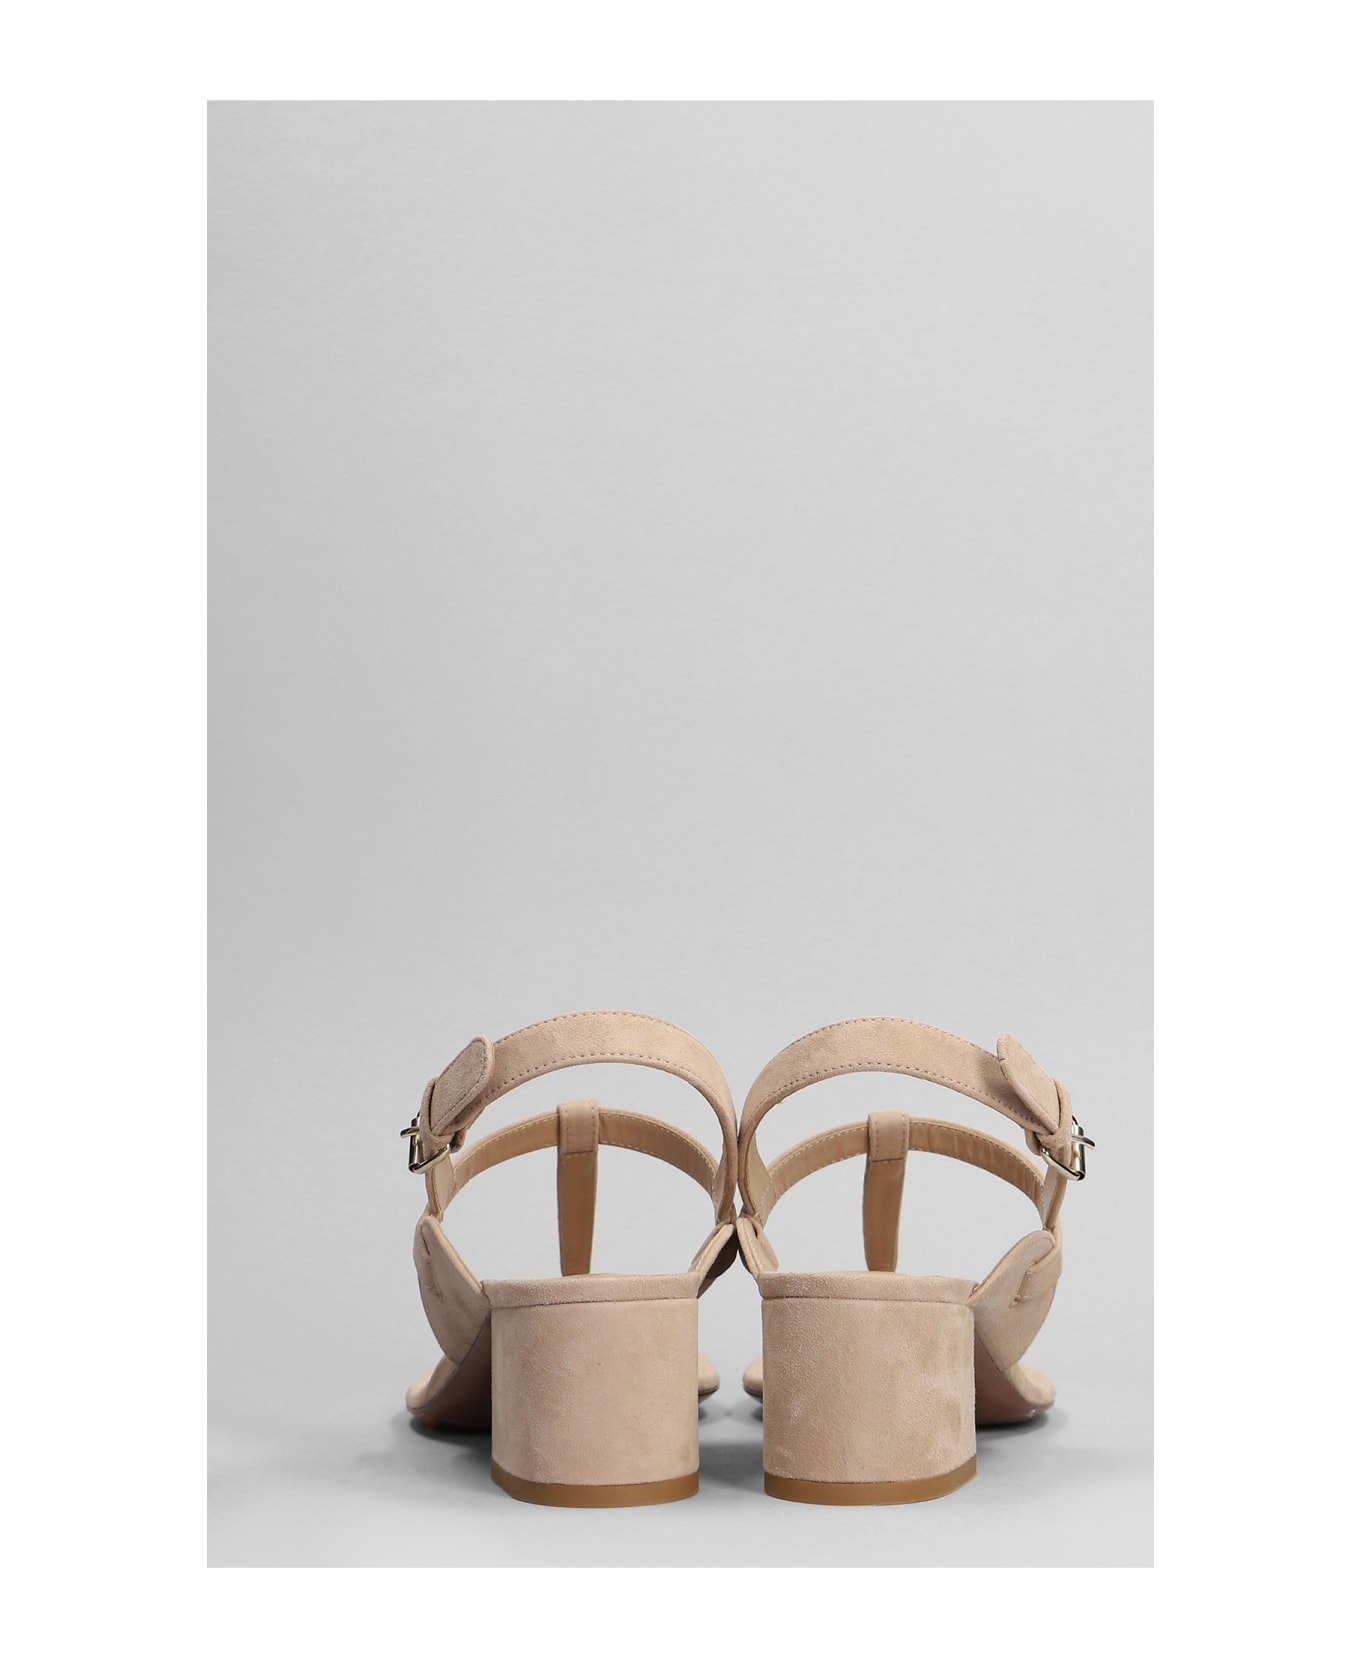 Relac Sandals In Beige Suede - beige